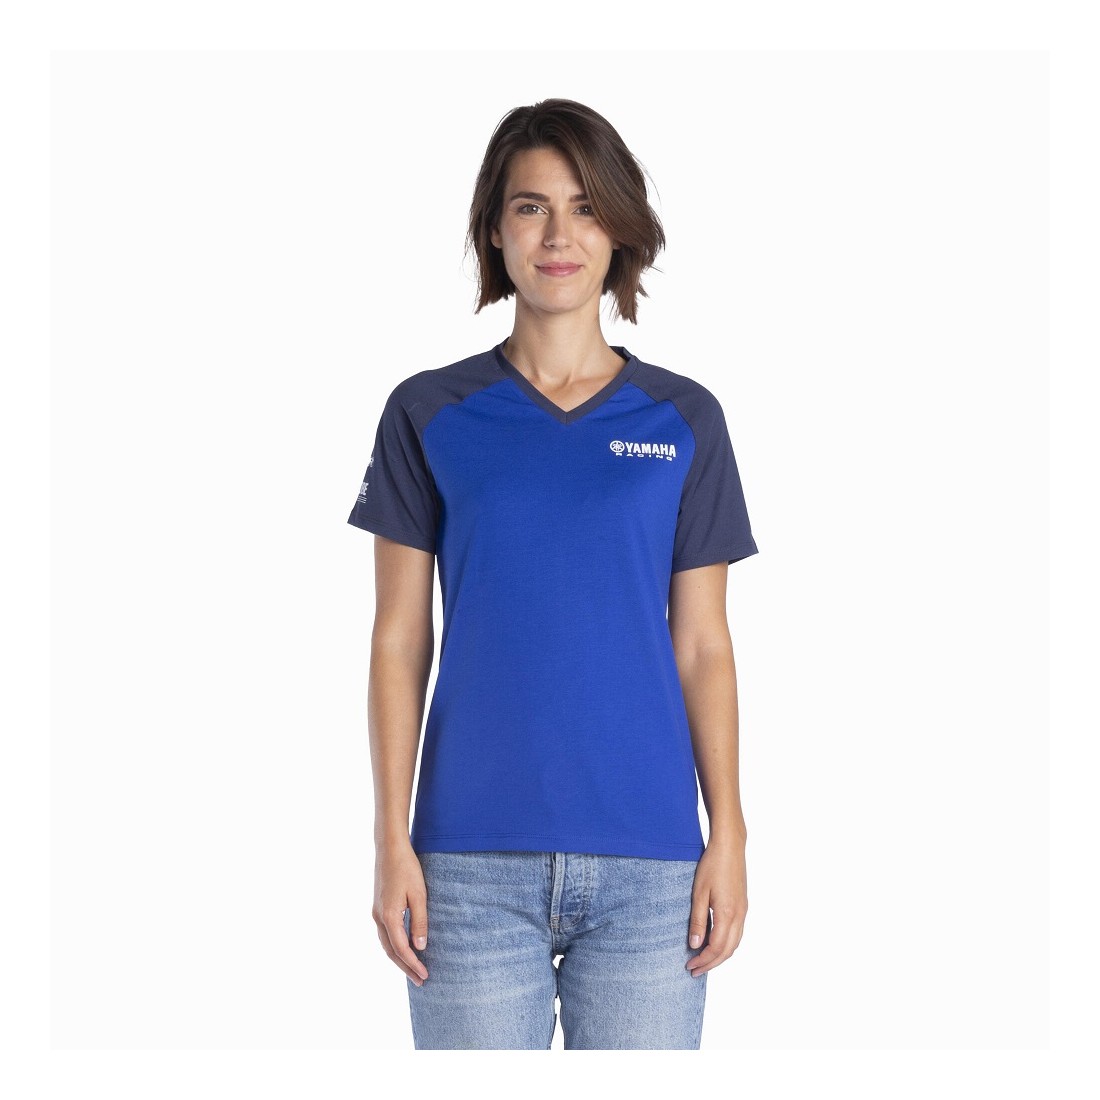 Camiseta Mujer Yamaha Paddock Blue TALLA JERSEY XS